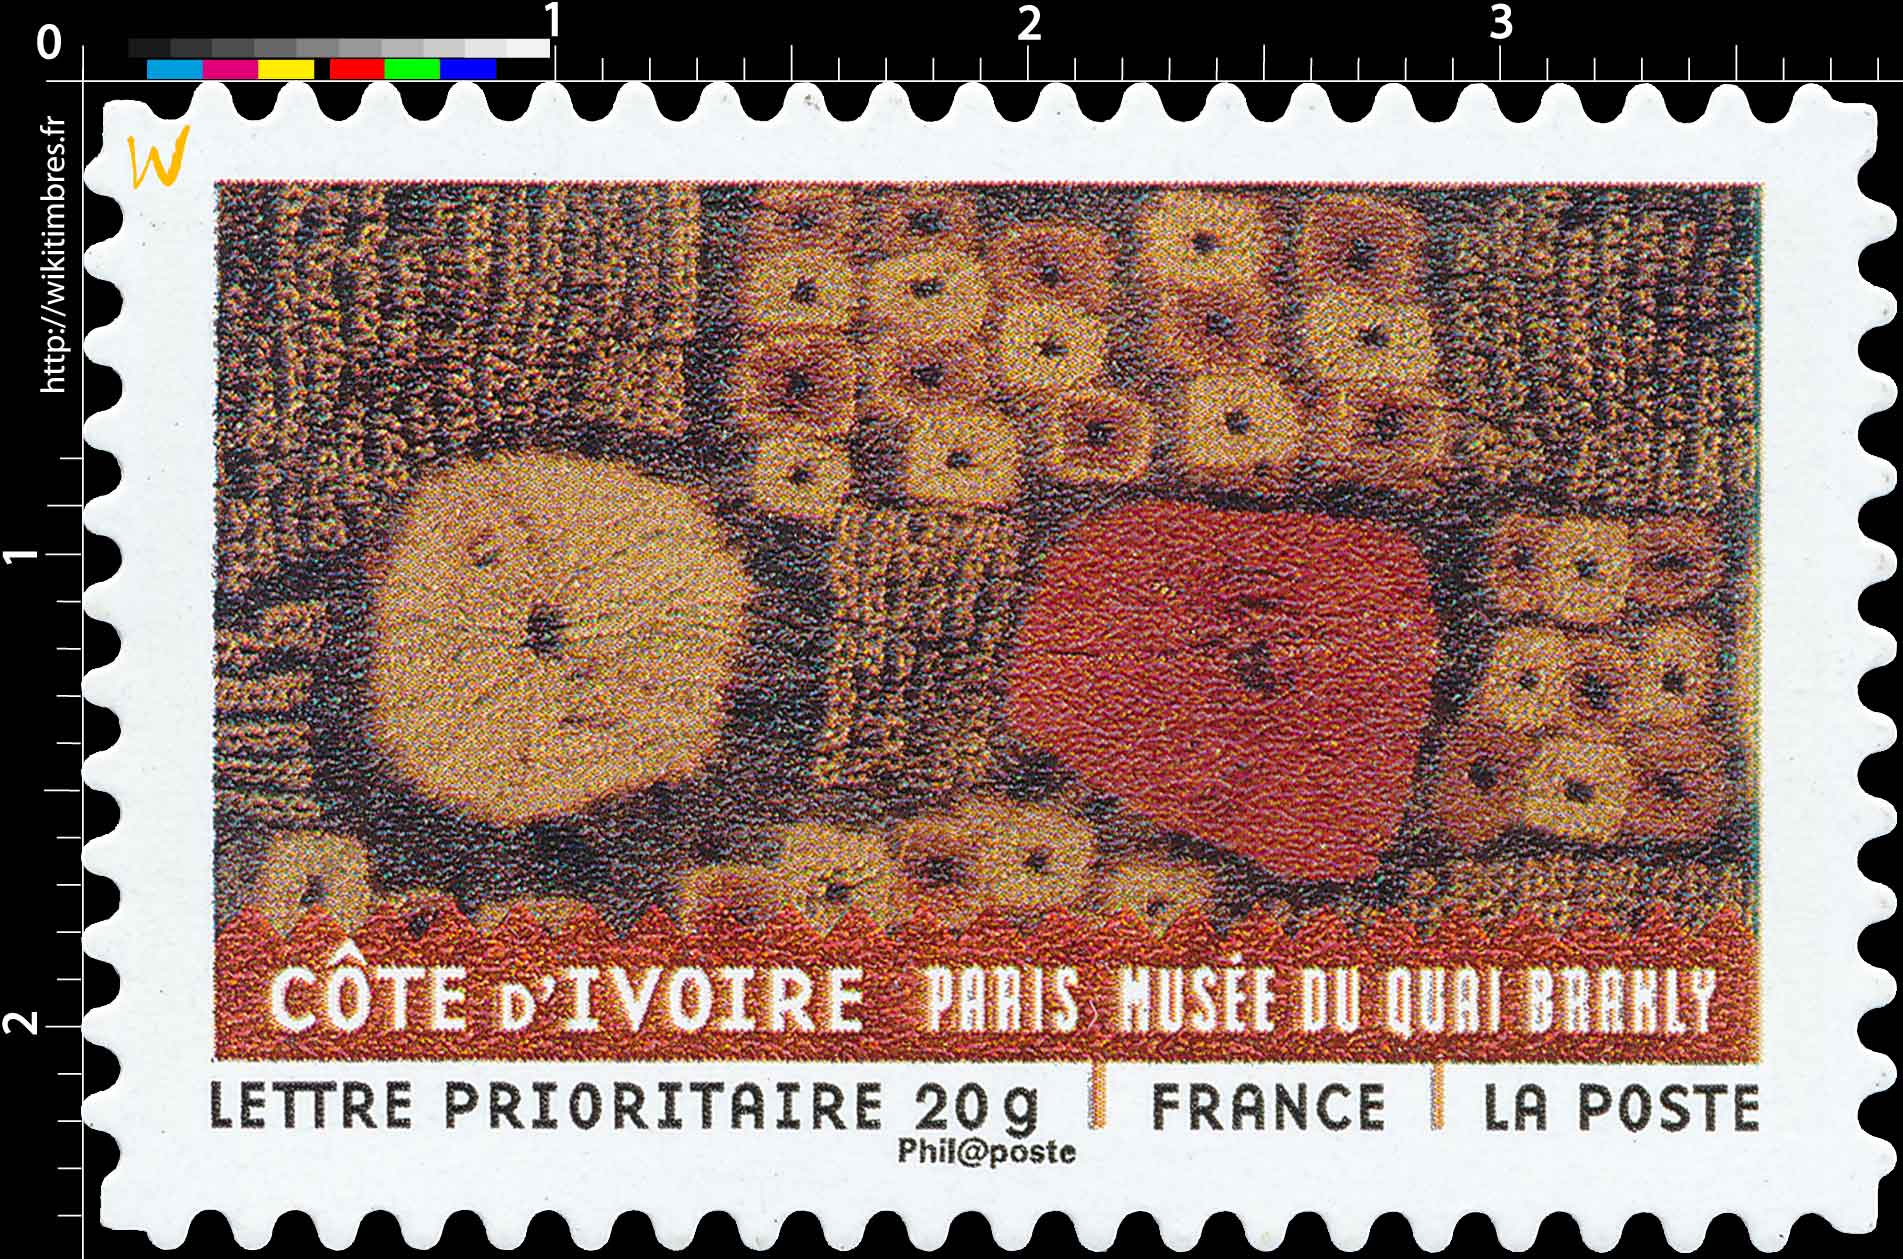 COTE D'IVOIRE PARIS MUSÉE DU QUAI BRANLY